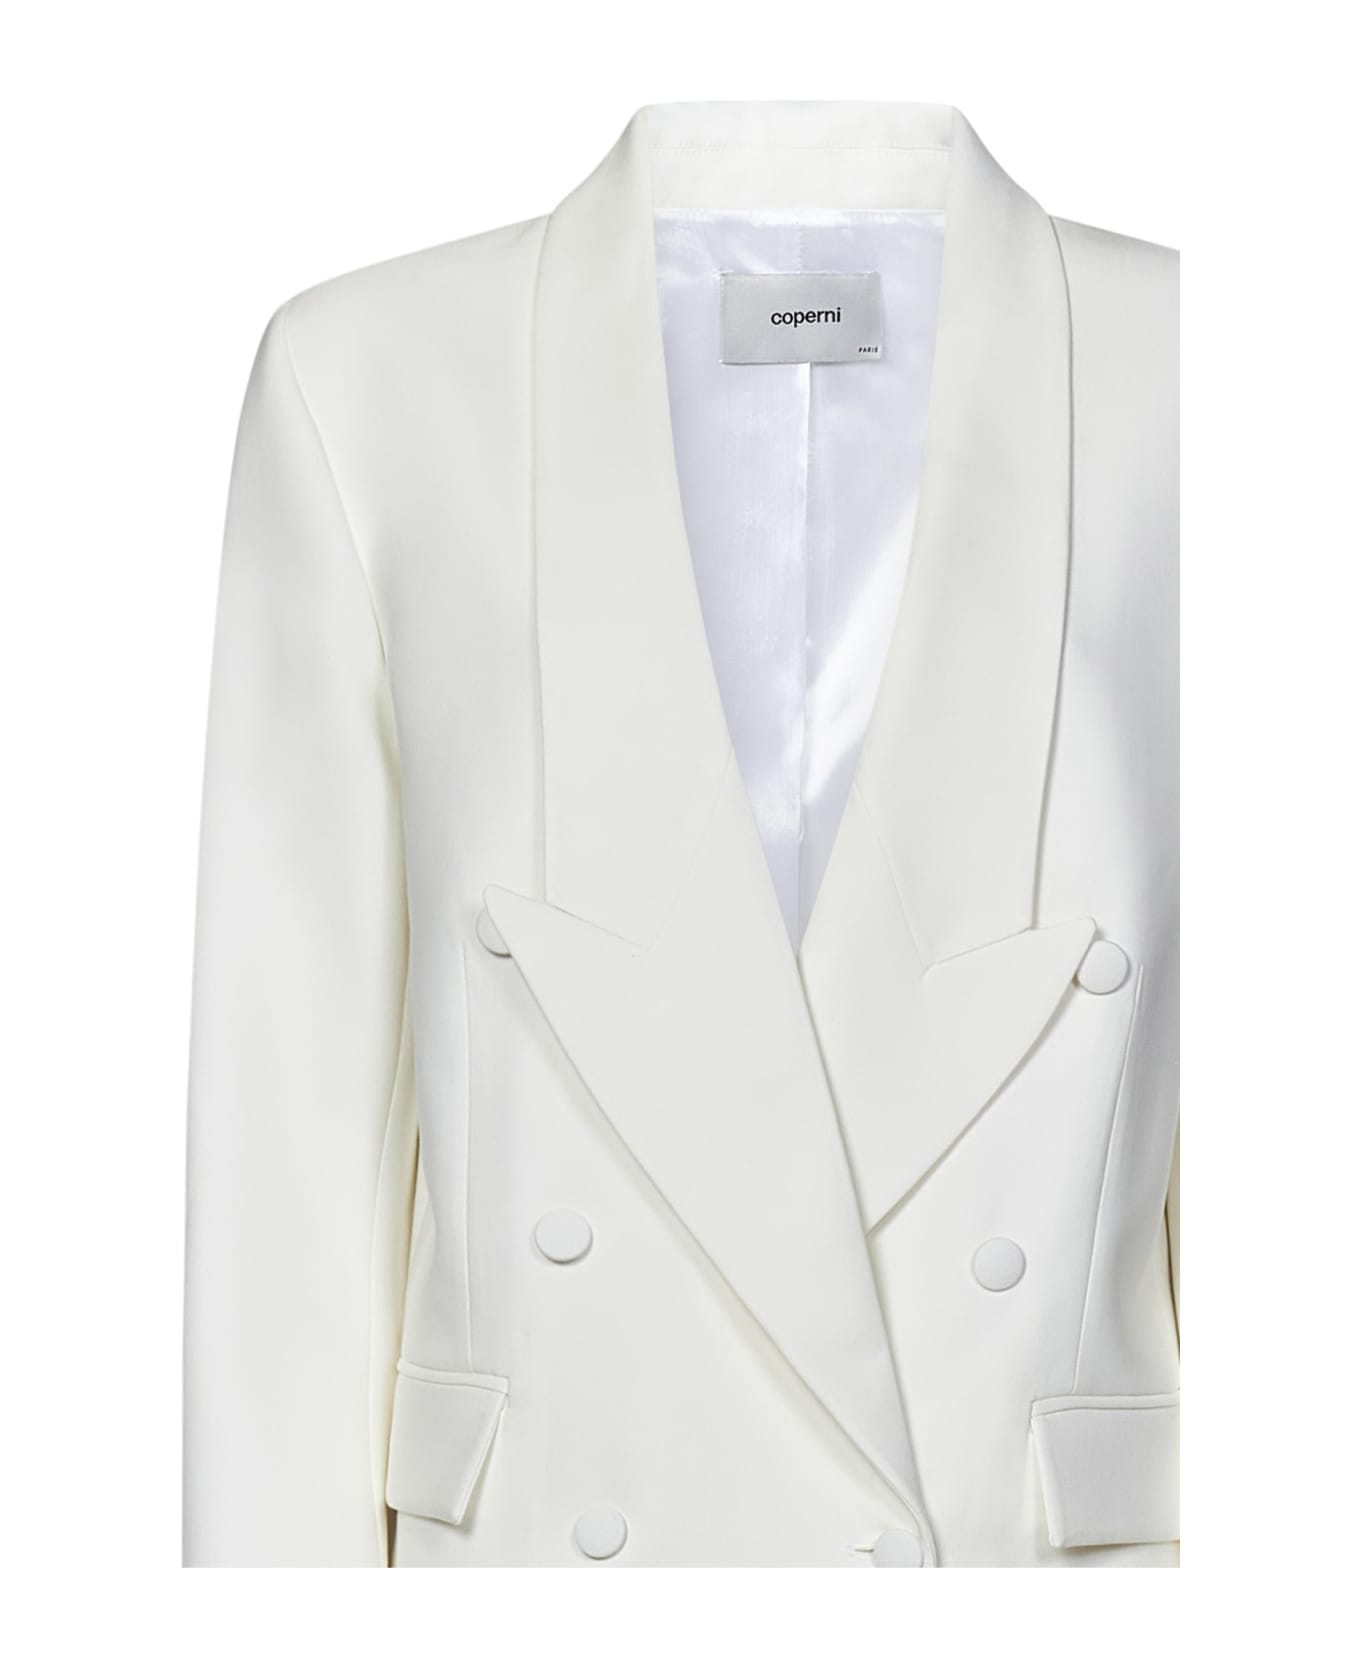 Coperni Double Breasted Tailored Jacket - WHITE